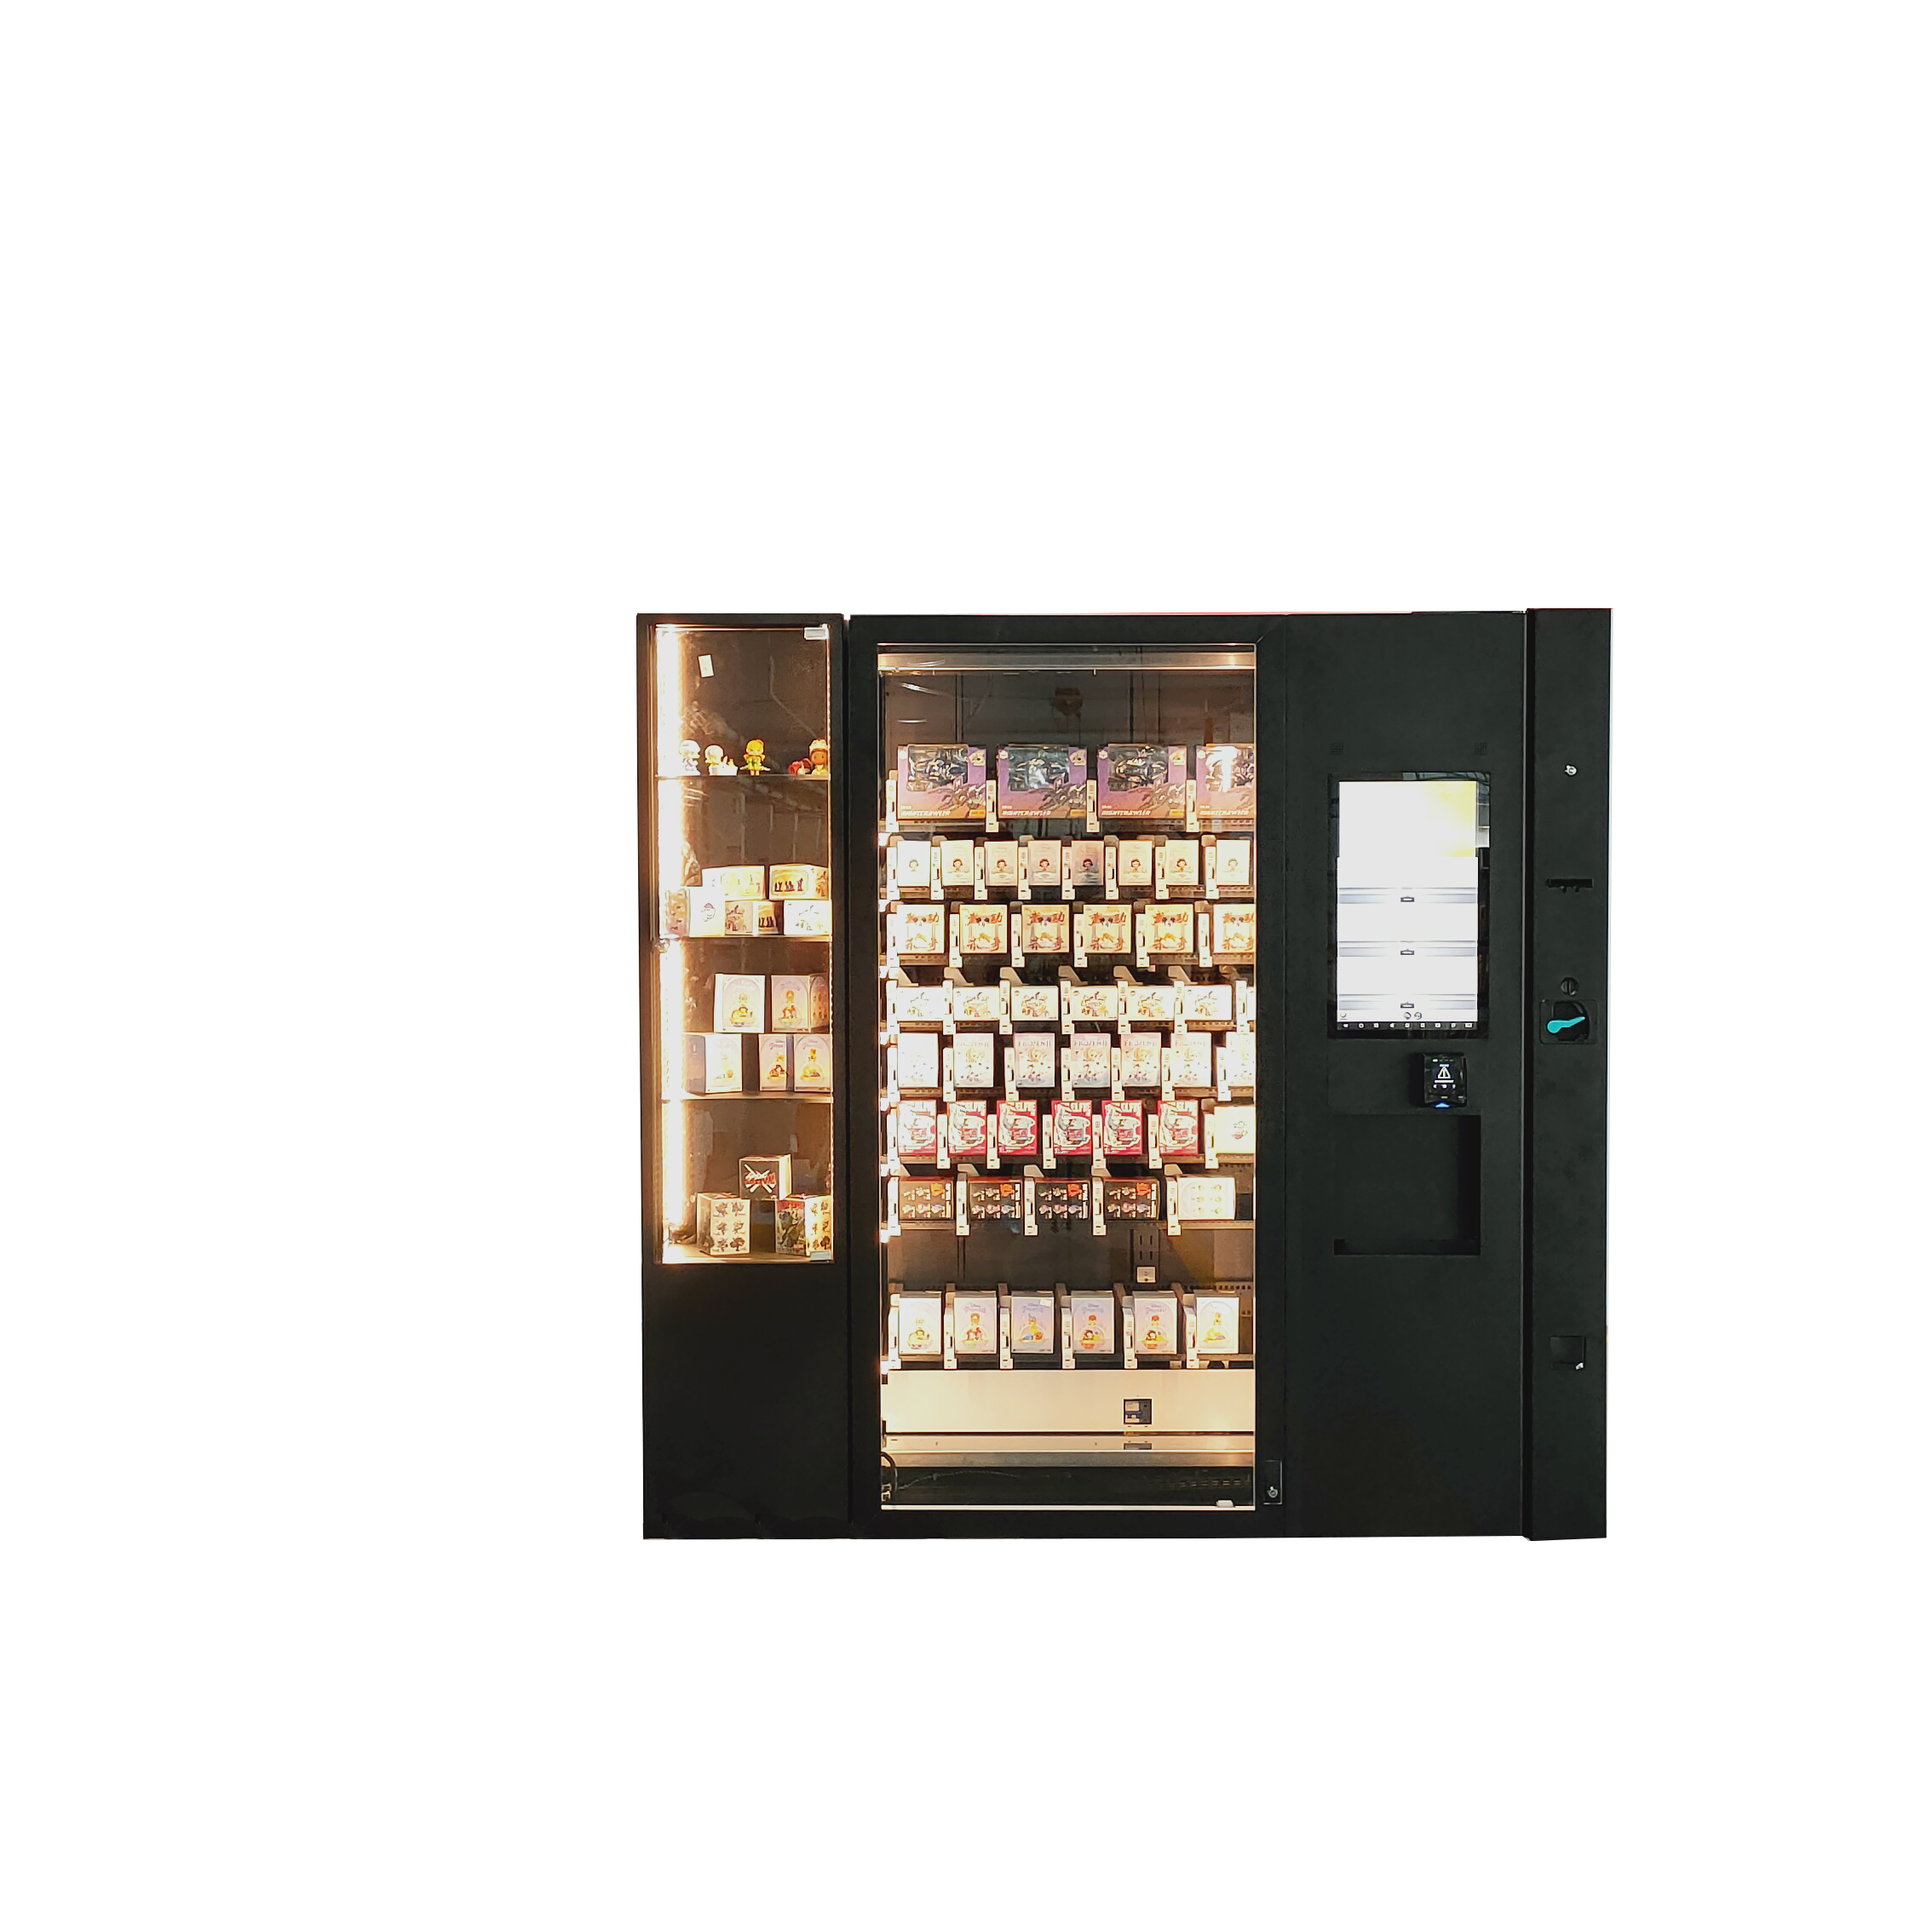 SNBC Art Toy vending machine BVM-RI200